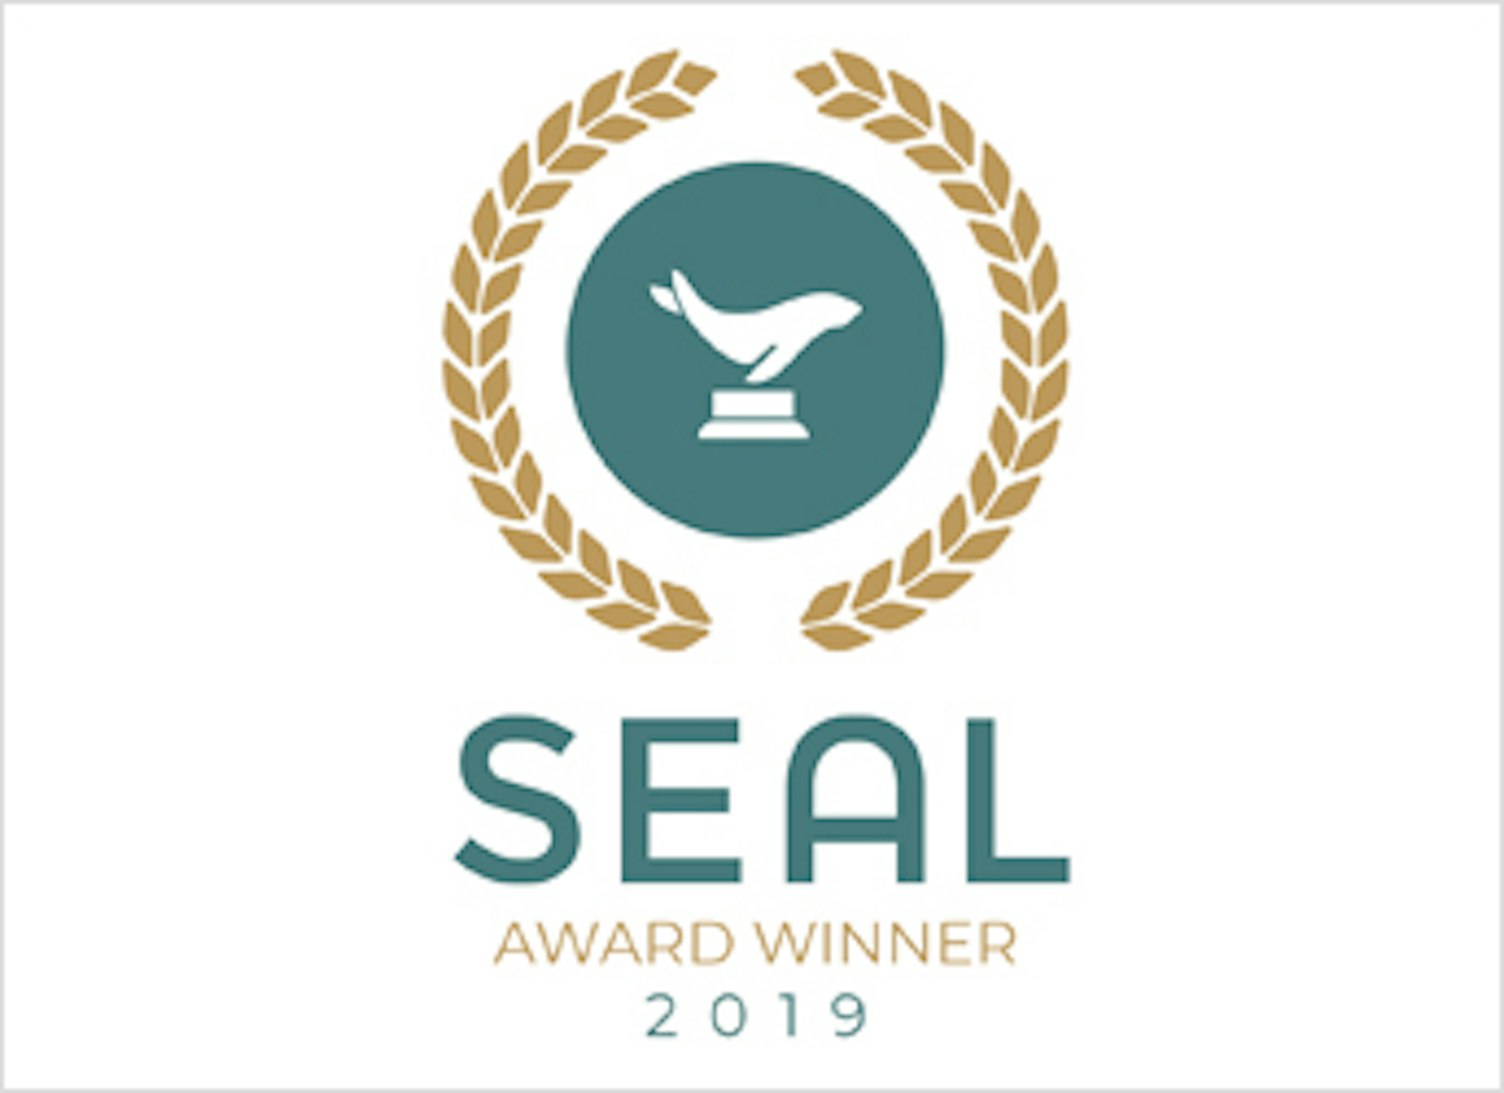 SEAL Award Winner 2019